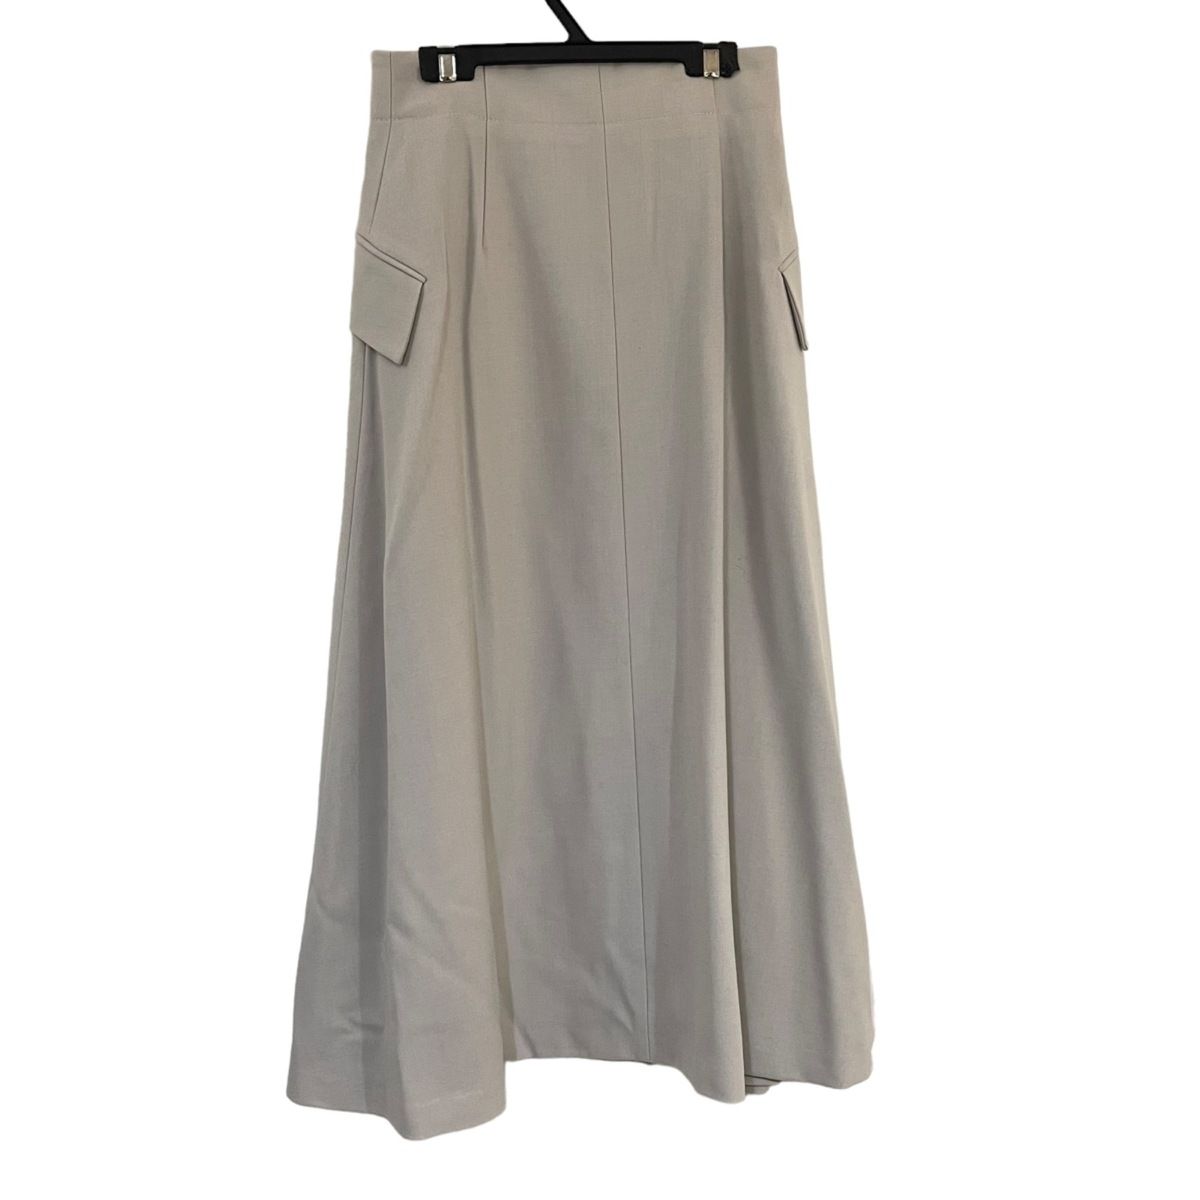 ebure(エブール) 巻きスカート サイズ36 S レディース美品 - ライト ...その他